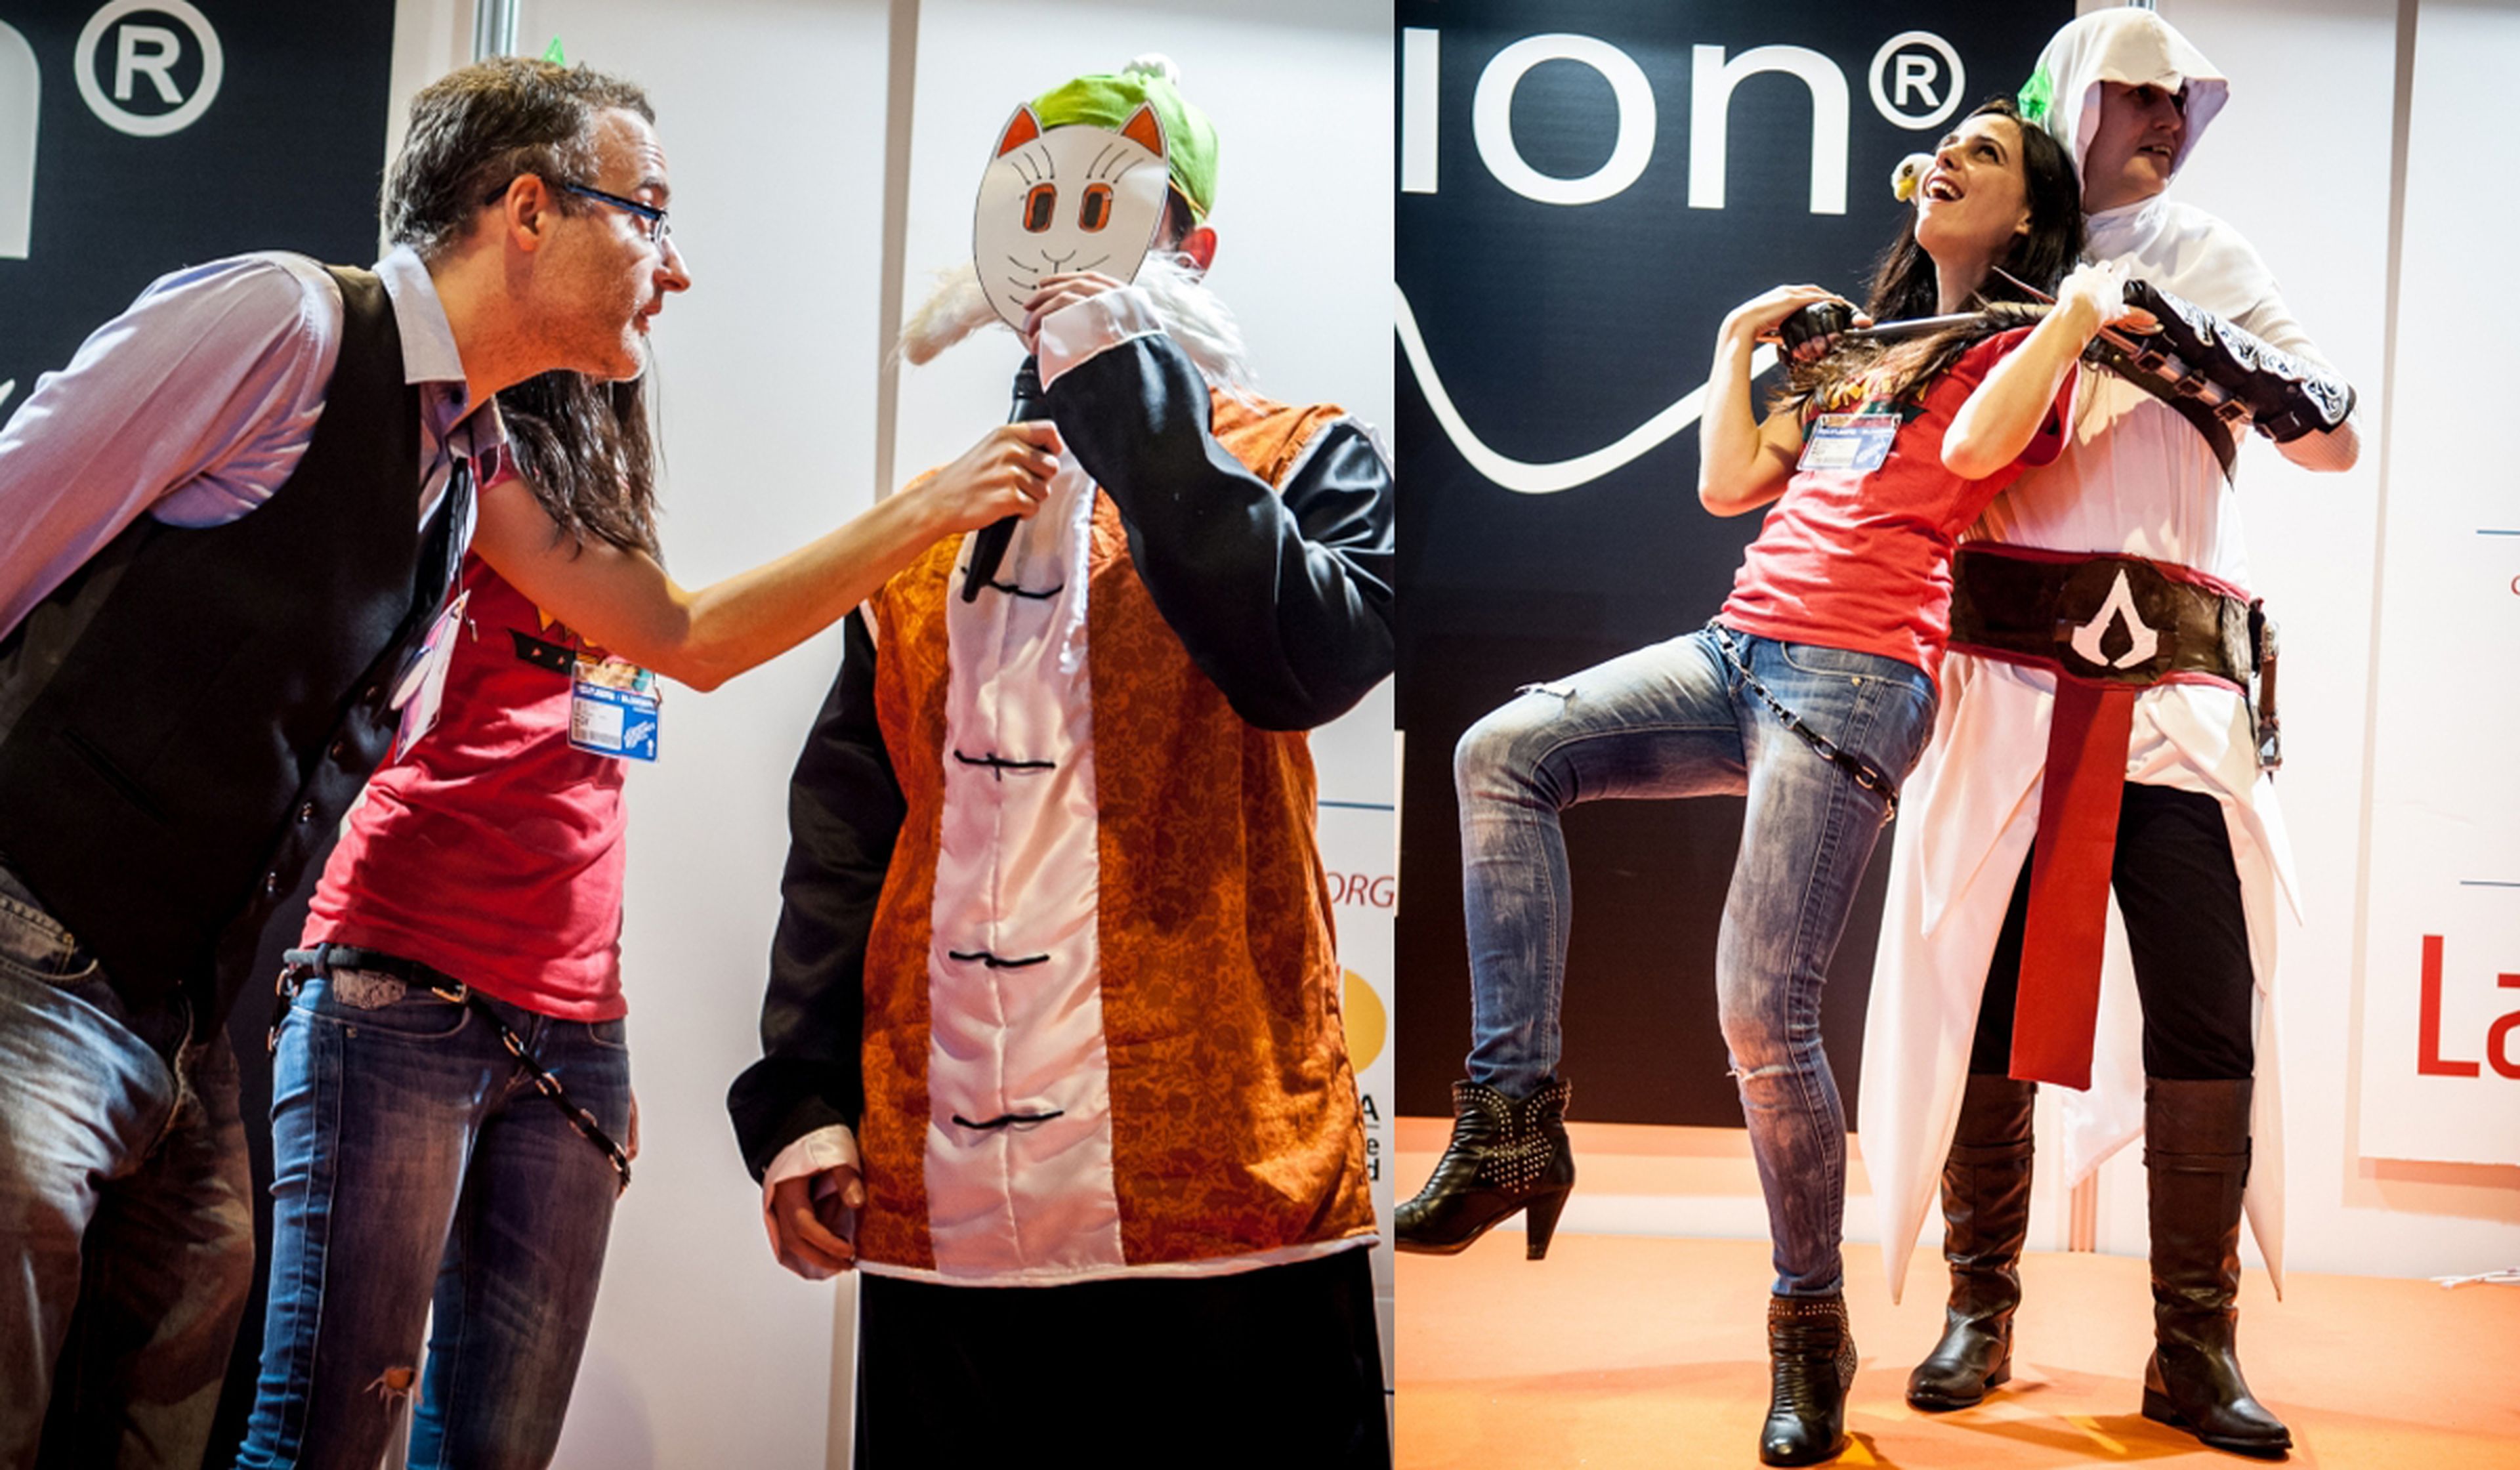 Concurso de cosplay Madrid Games Week. ¡Vota por los mejores!